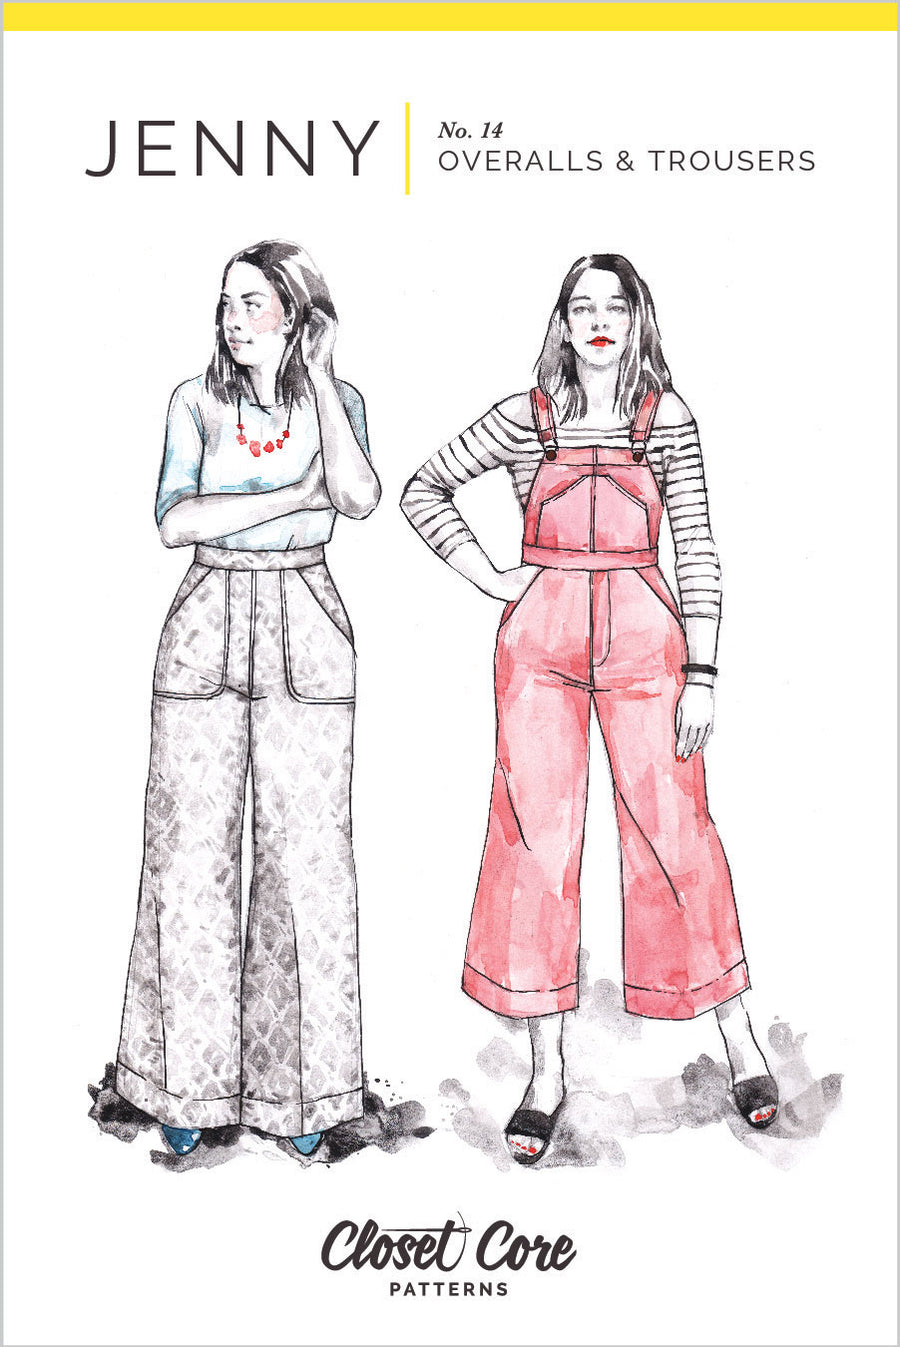 Jenny Overalls & Trousers Pattern | Closet Core Patterns